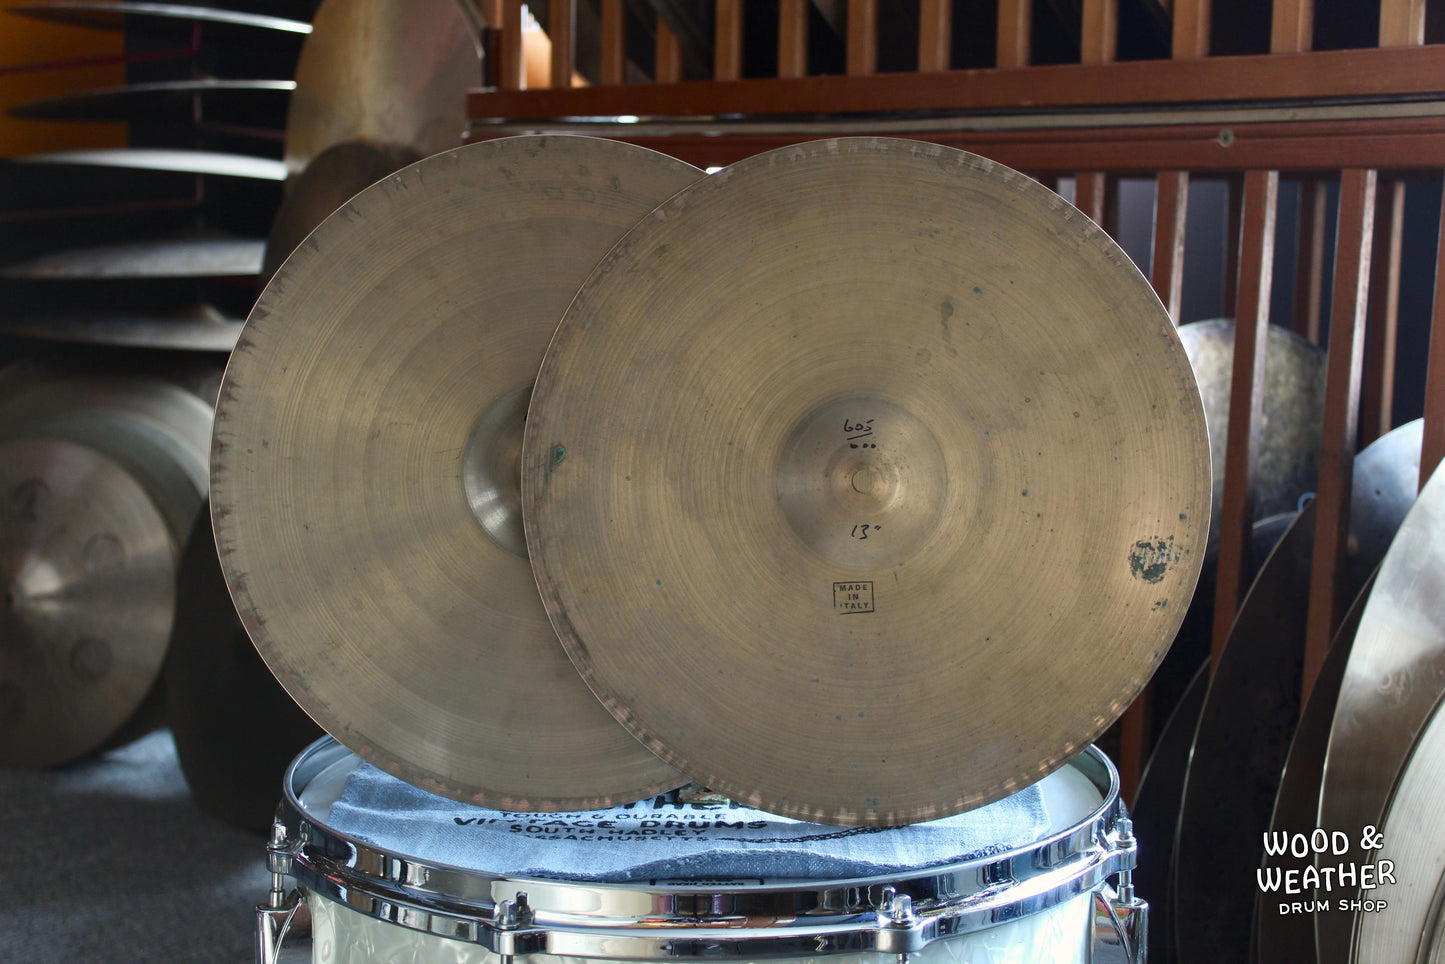 1950s Pasha 13" "Medium" Hi-Hat Cymbals 600/605g